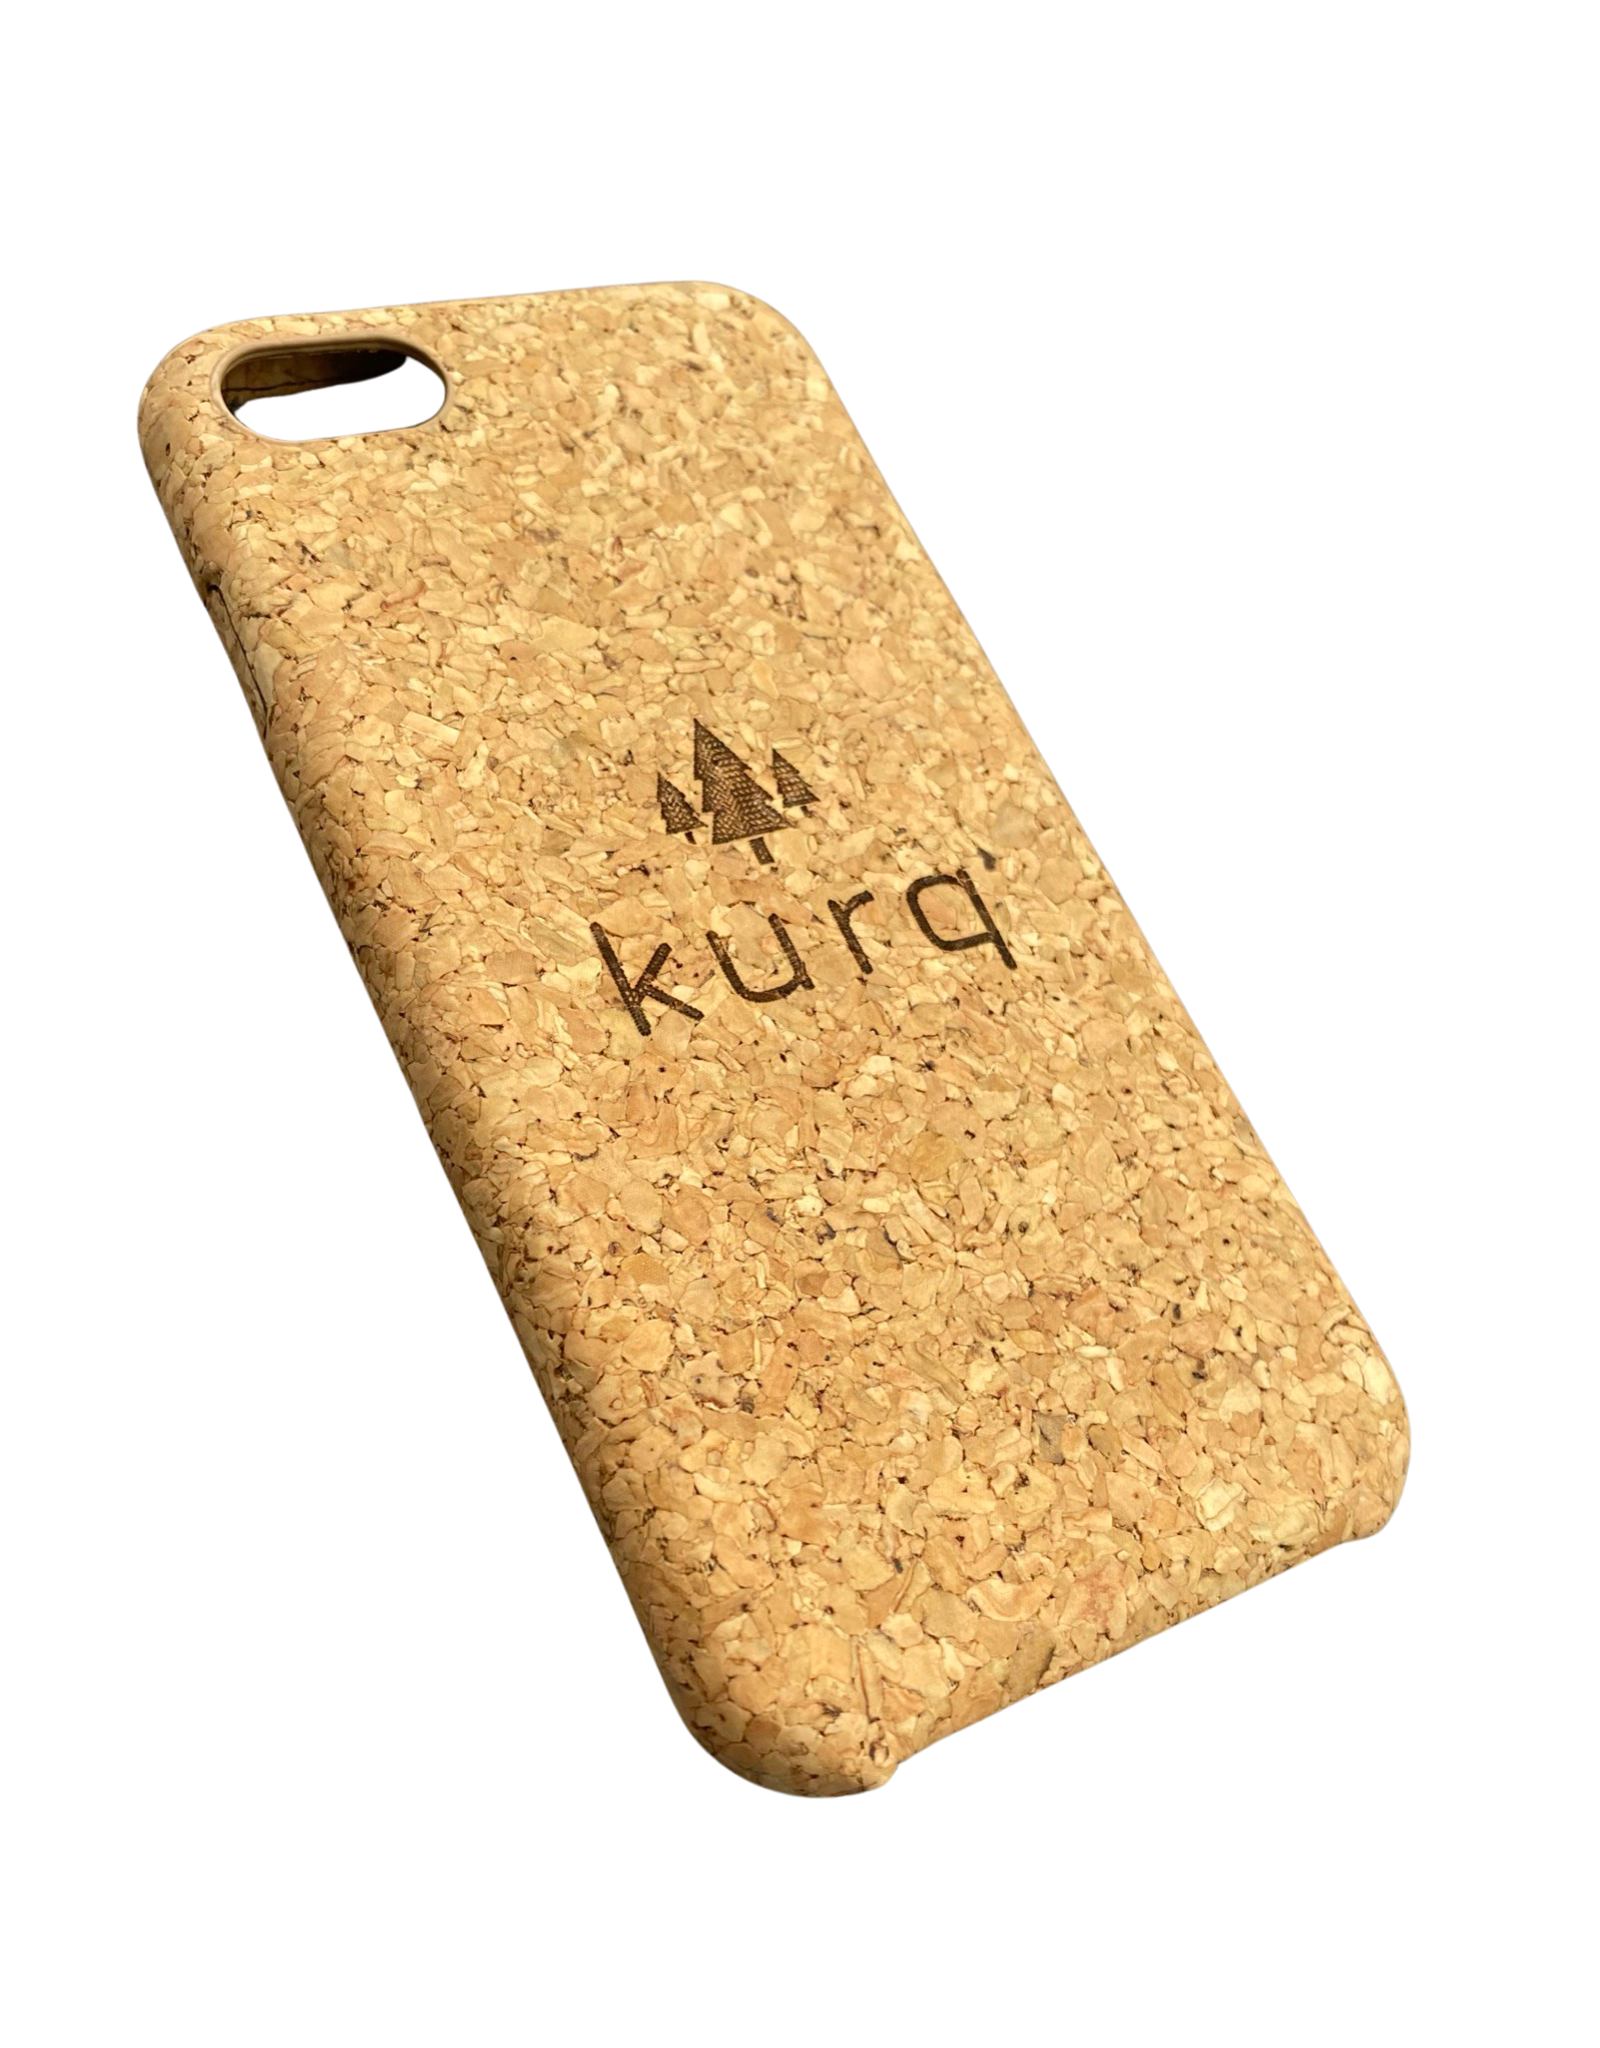 KURQ - Kurk telefoonhoesje voor  iPhone 7, iPhone 8 & iPhone SE 2020